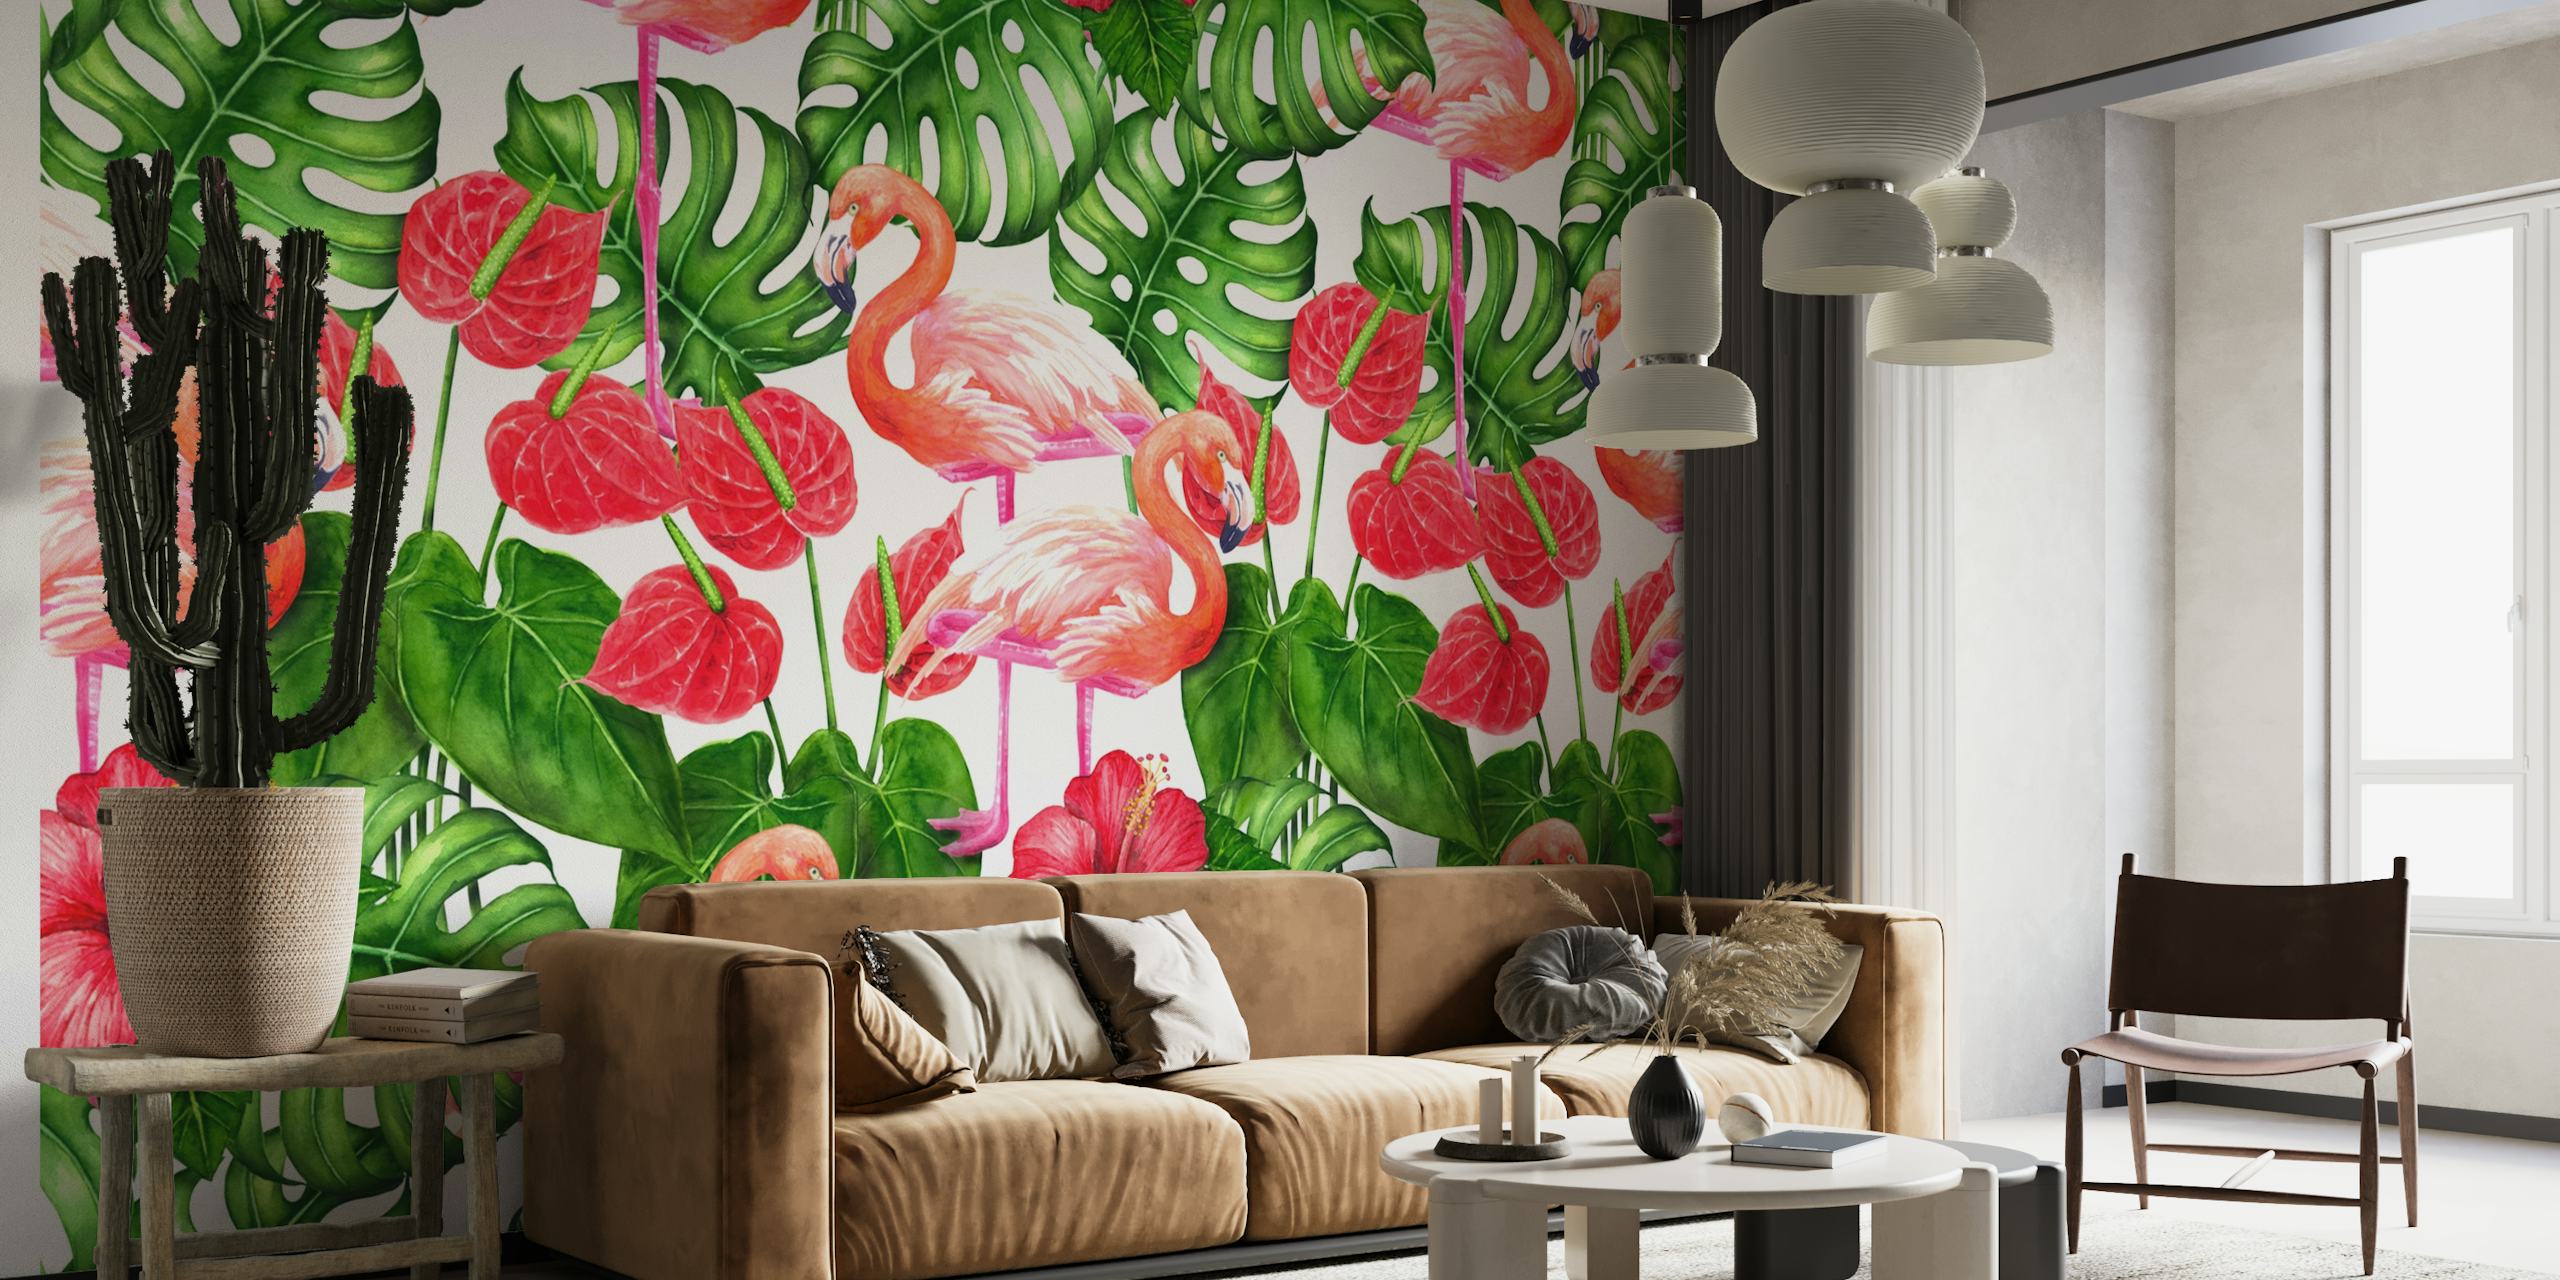 Flamingo and tropical garden 3 papel pintado